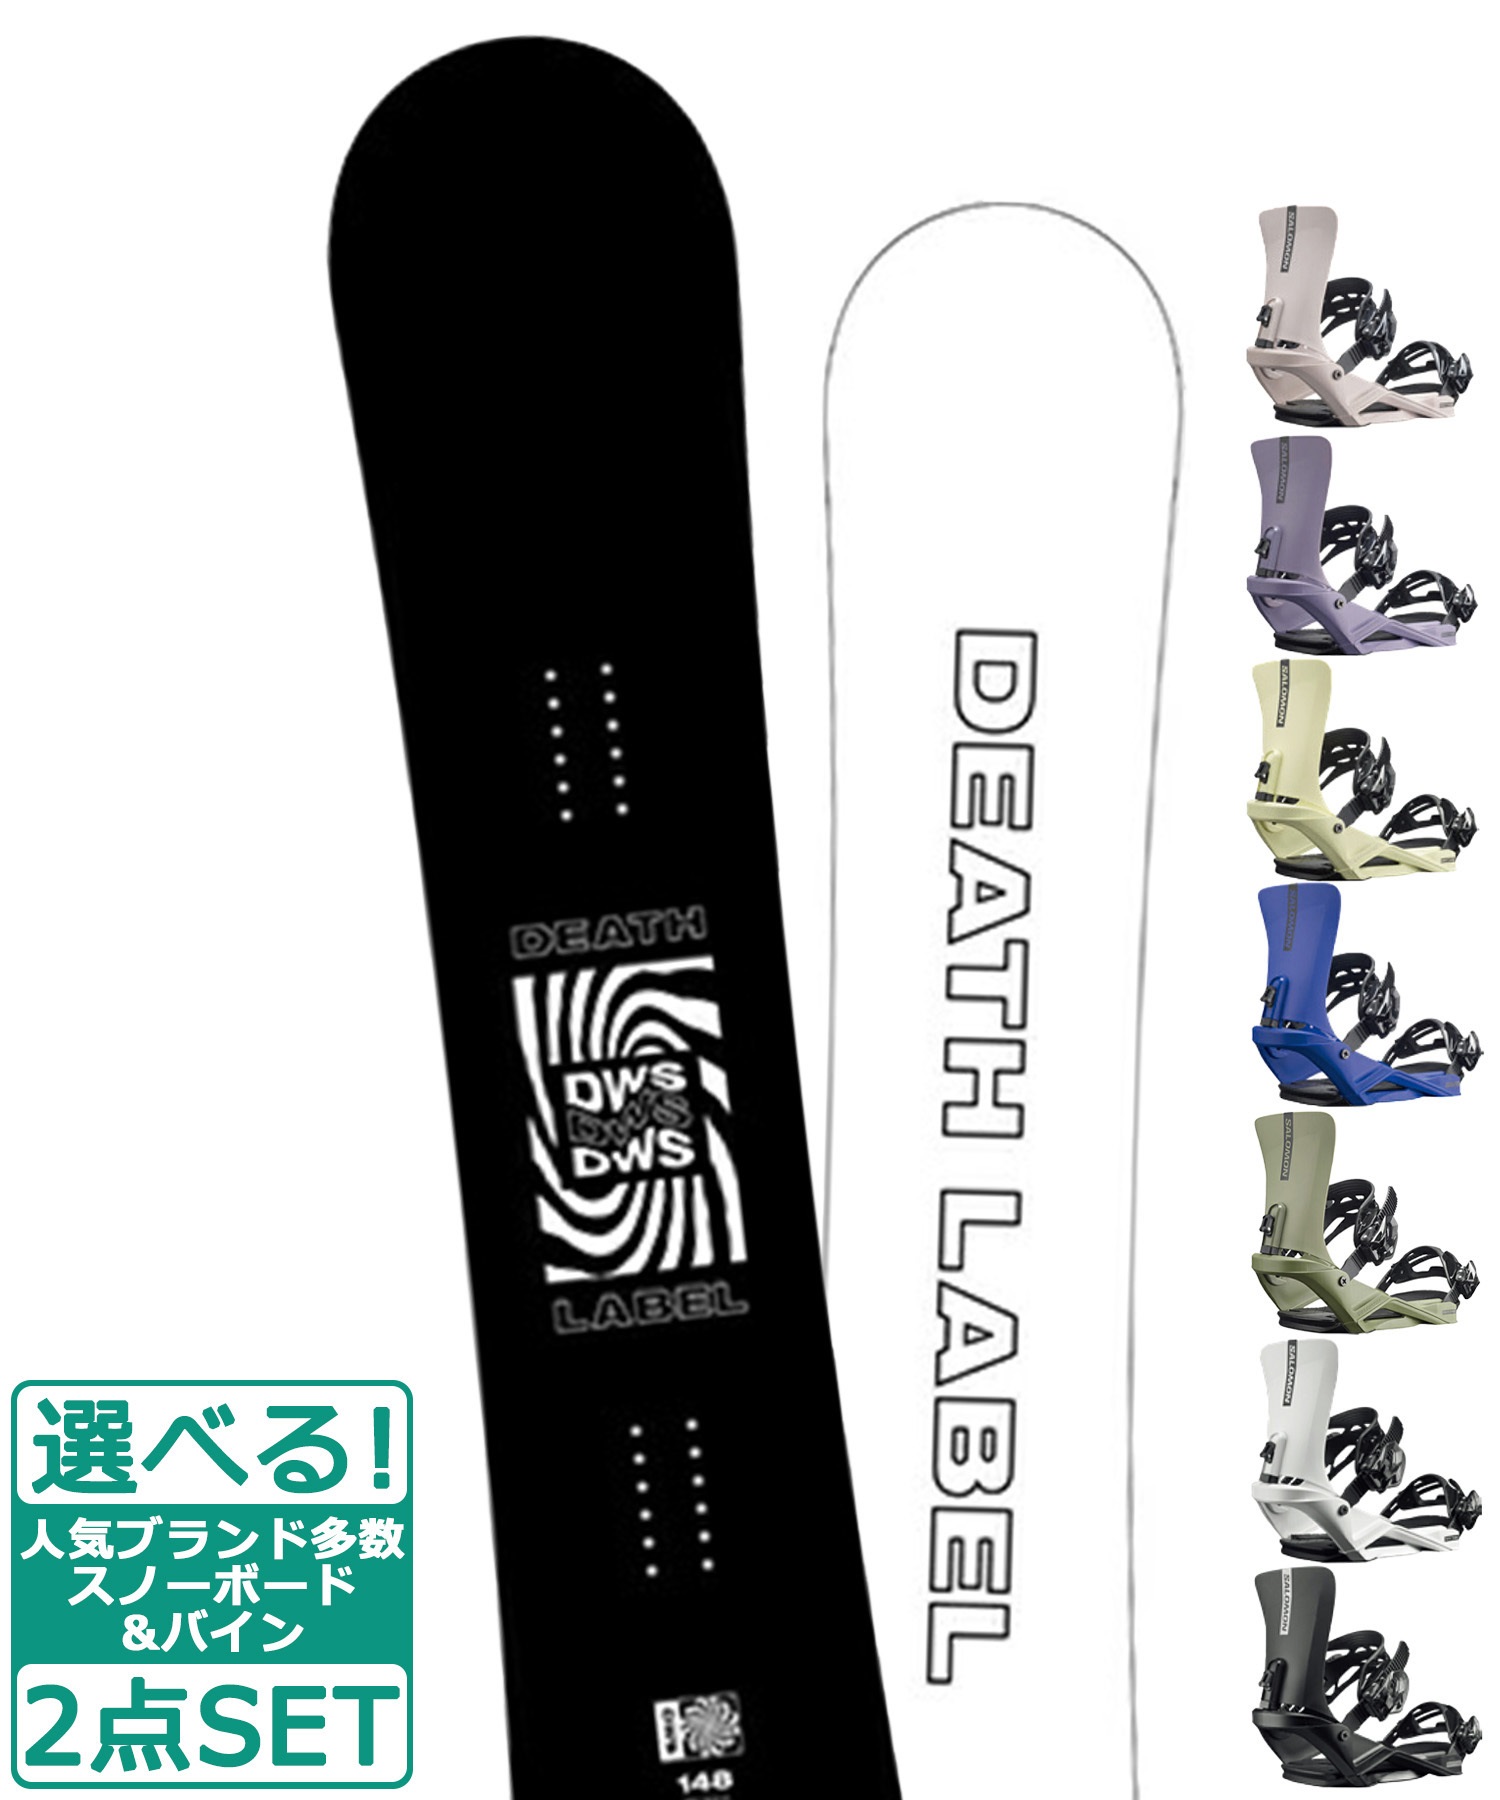 BUDEATH LABEL 150センチ ビンディングセット - スノーボード